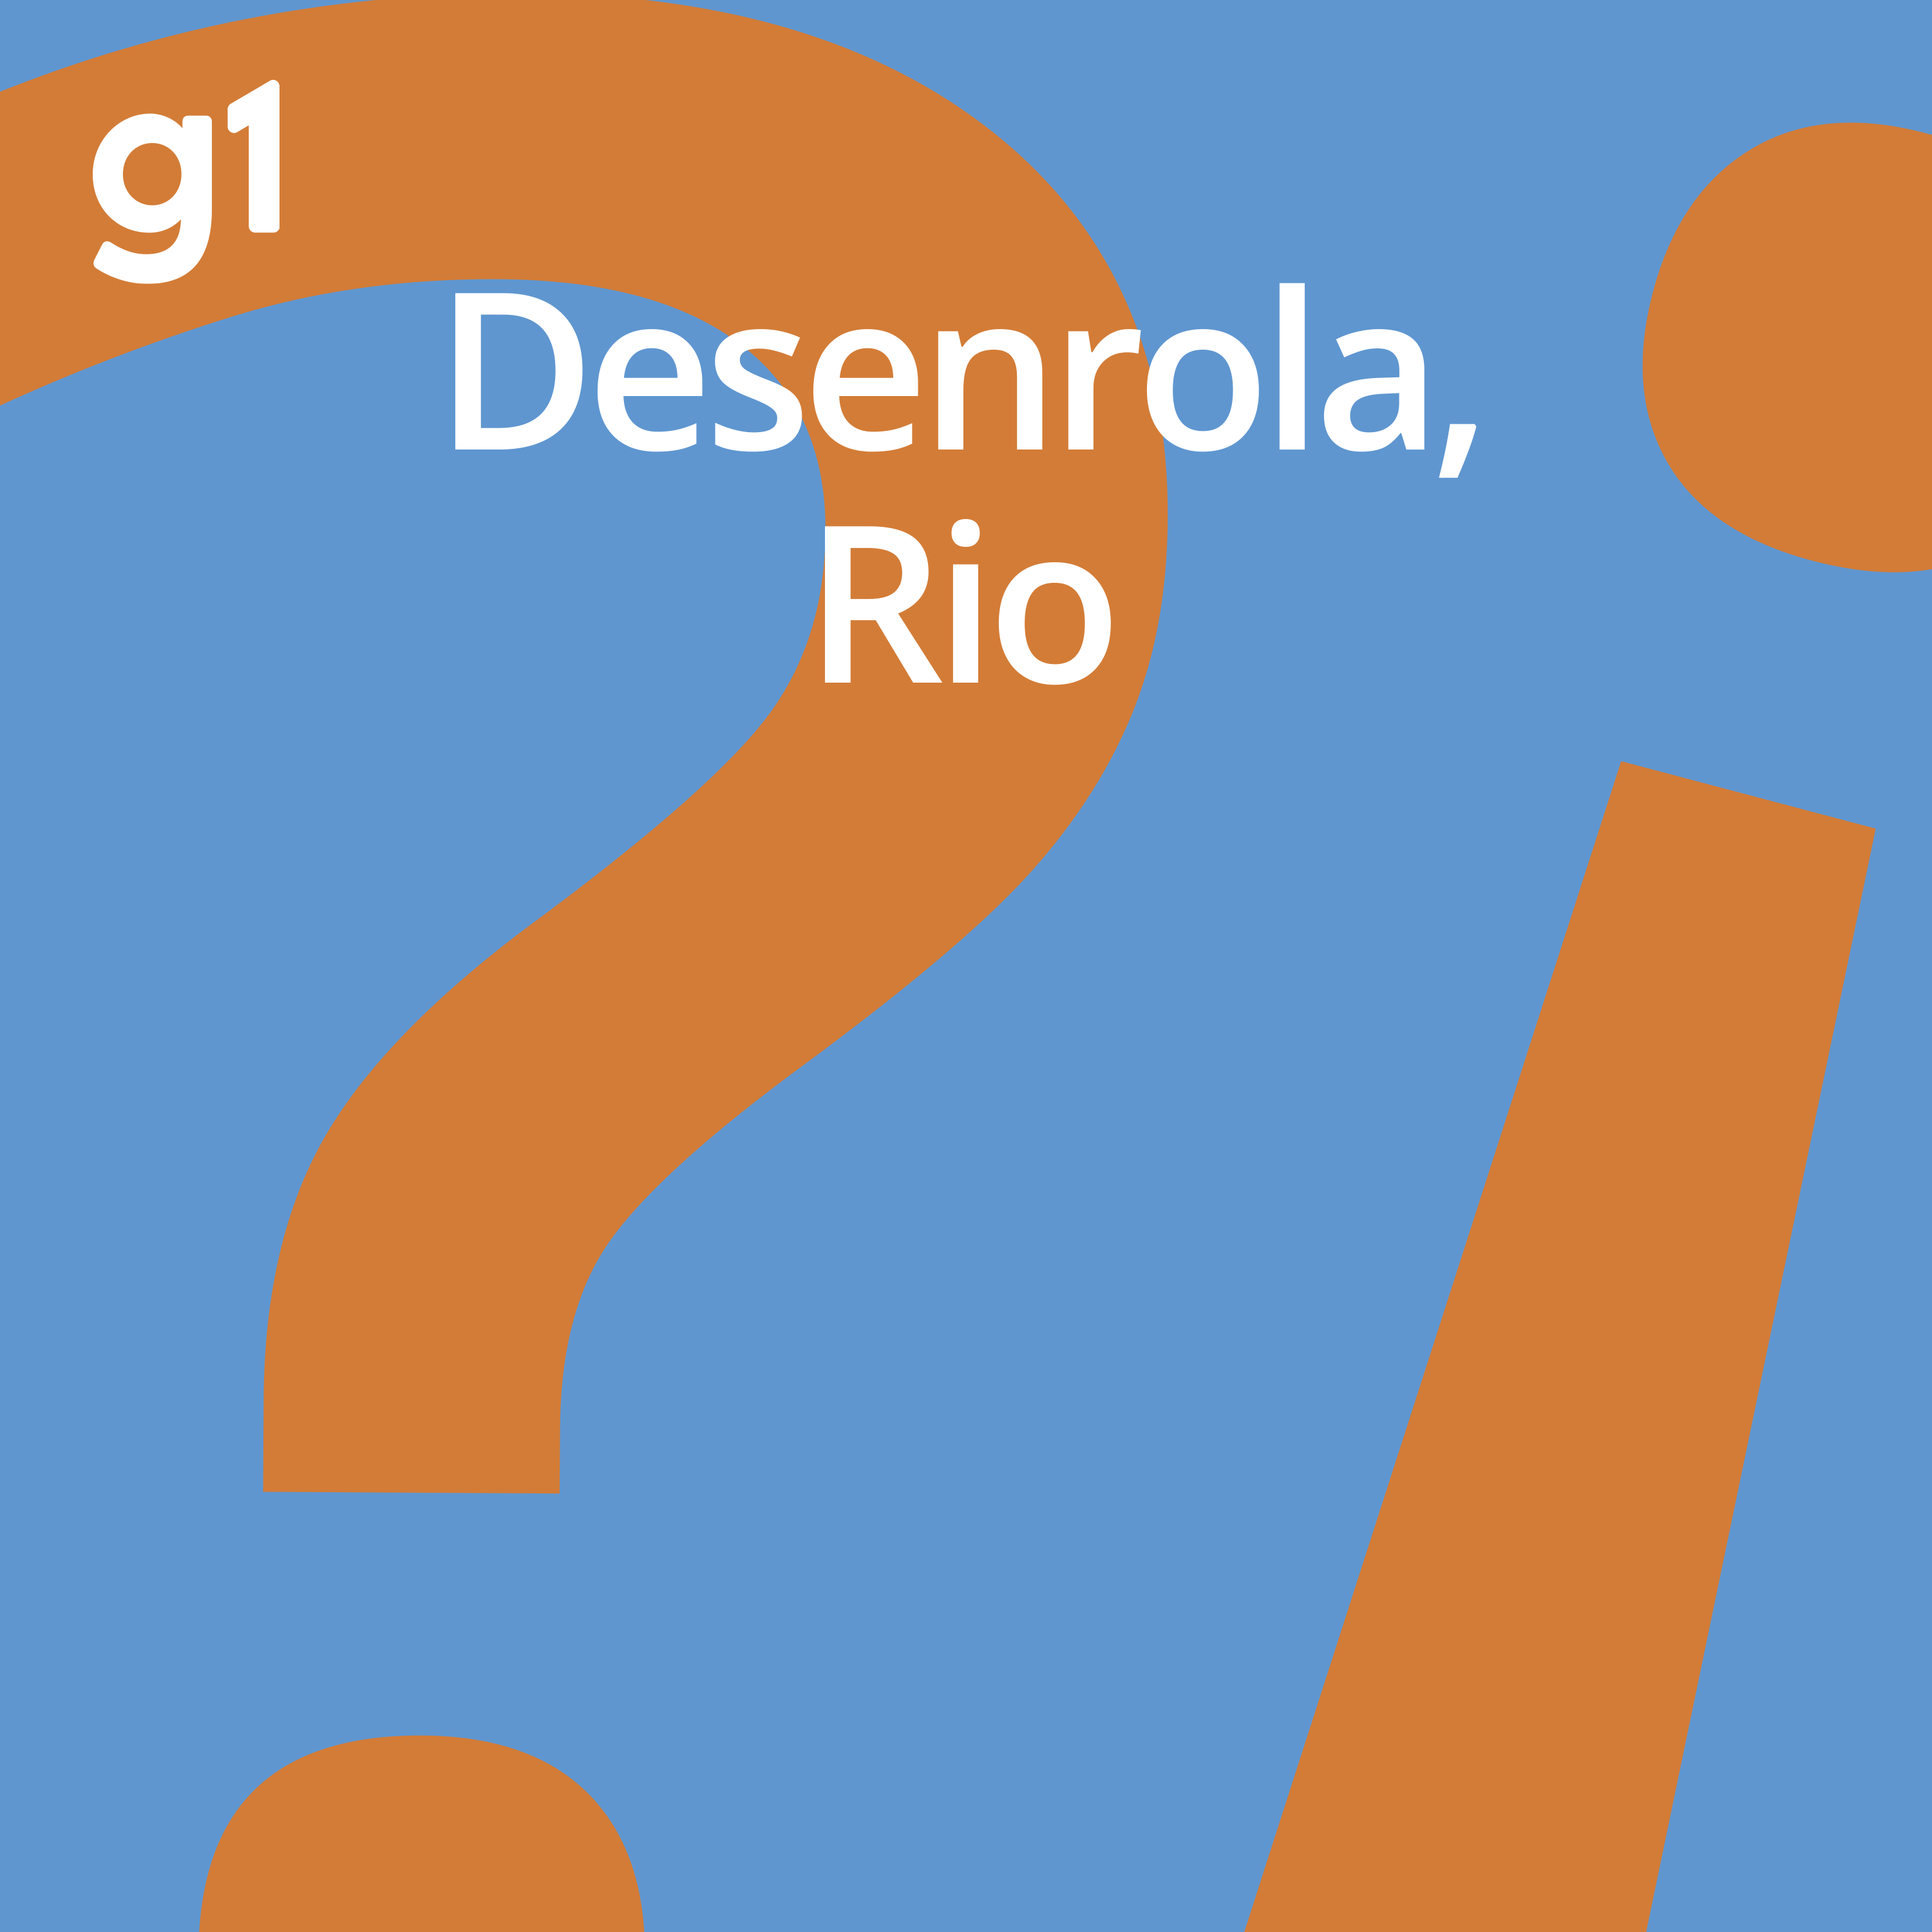 #97 Desenrola, Rio – O plano estratégico para a cidade